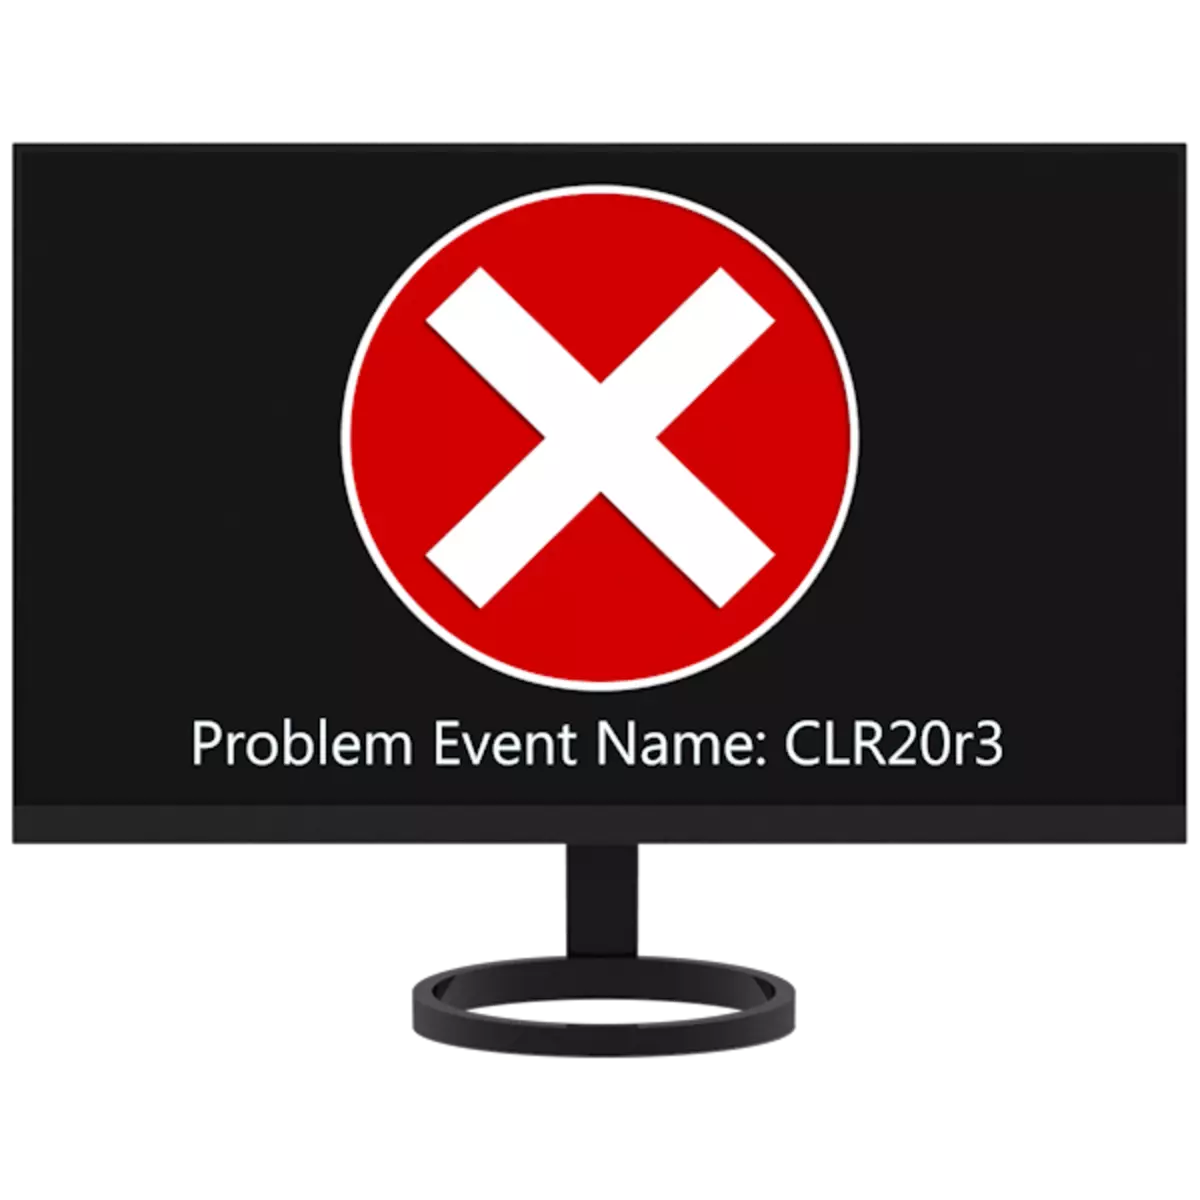 Ինչպես շտկել CLR20R3 սխալը Windows 7-ում